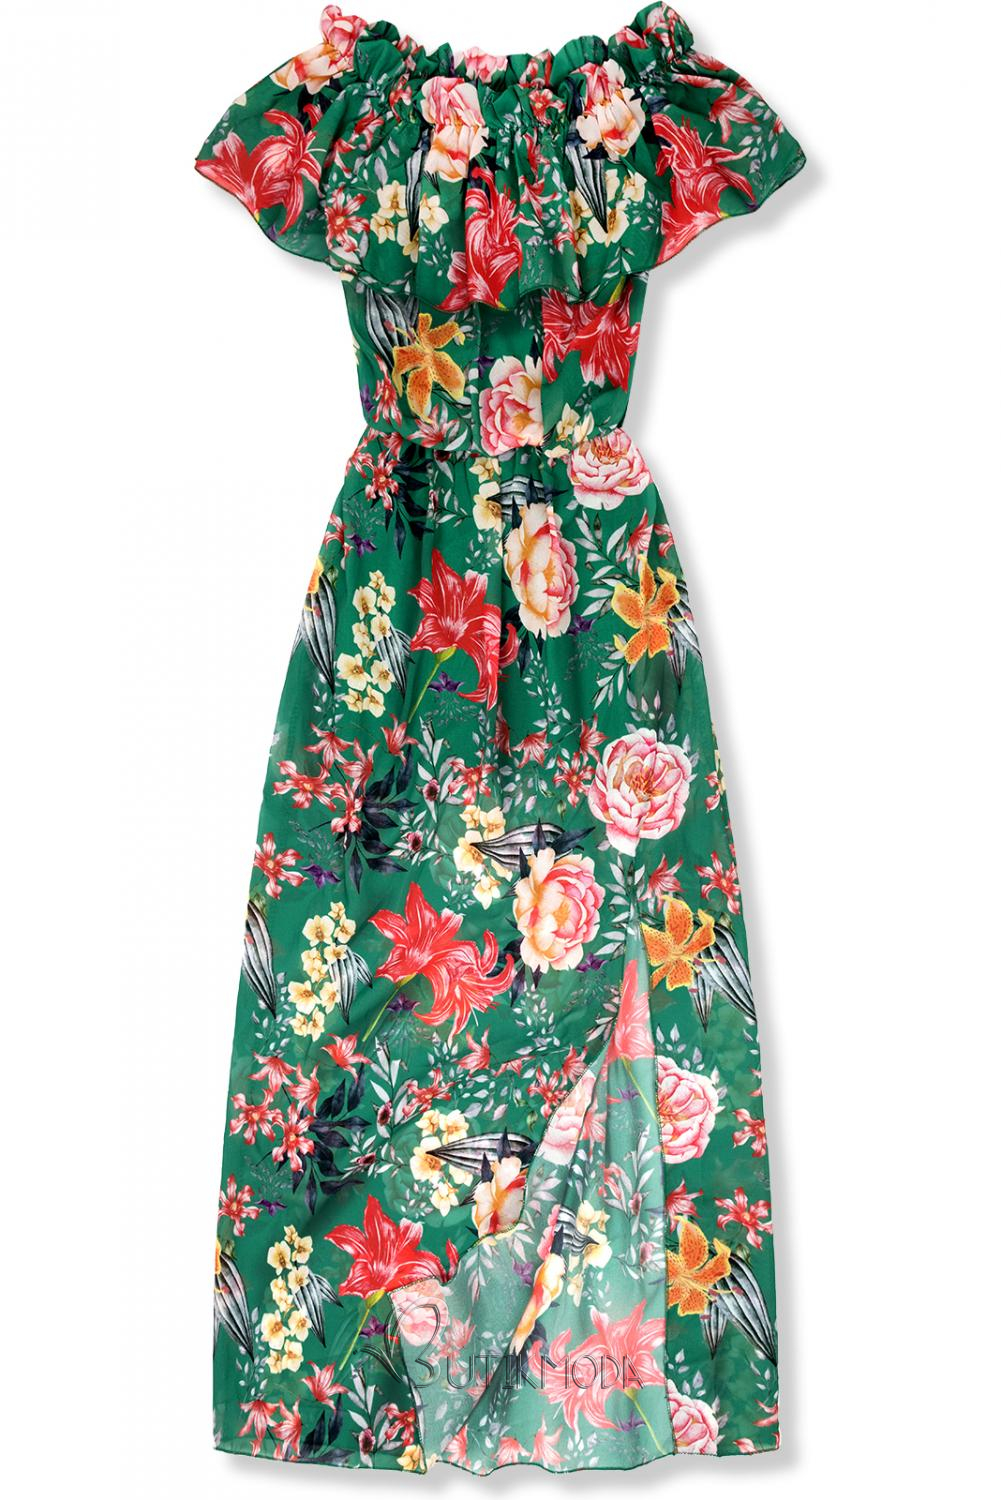 Langes Kleid mit Blumenprint grün